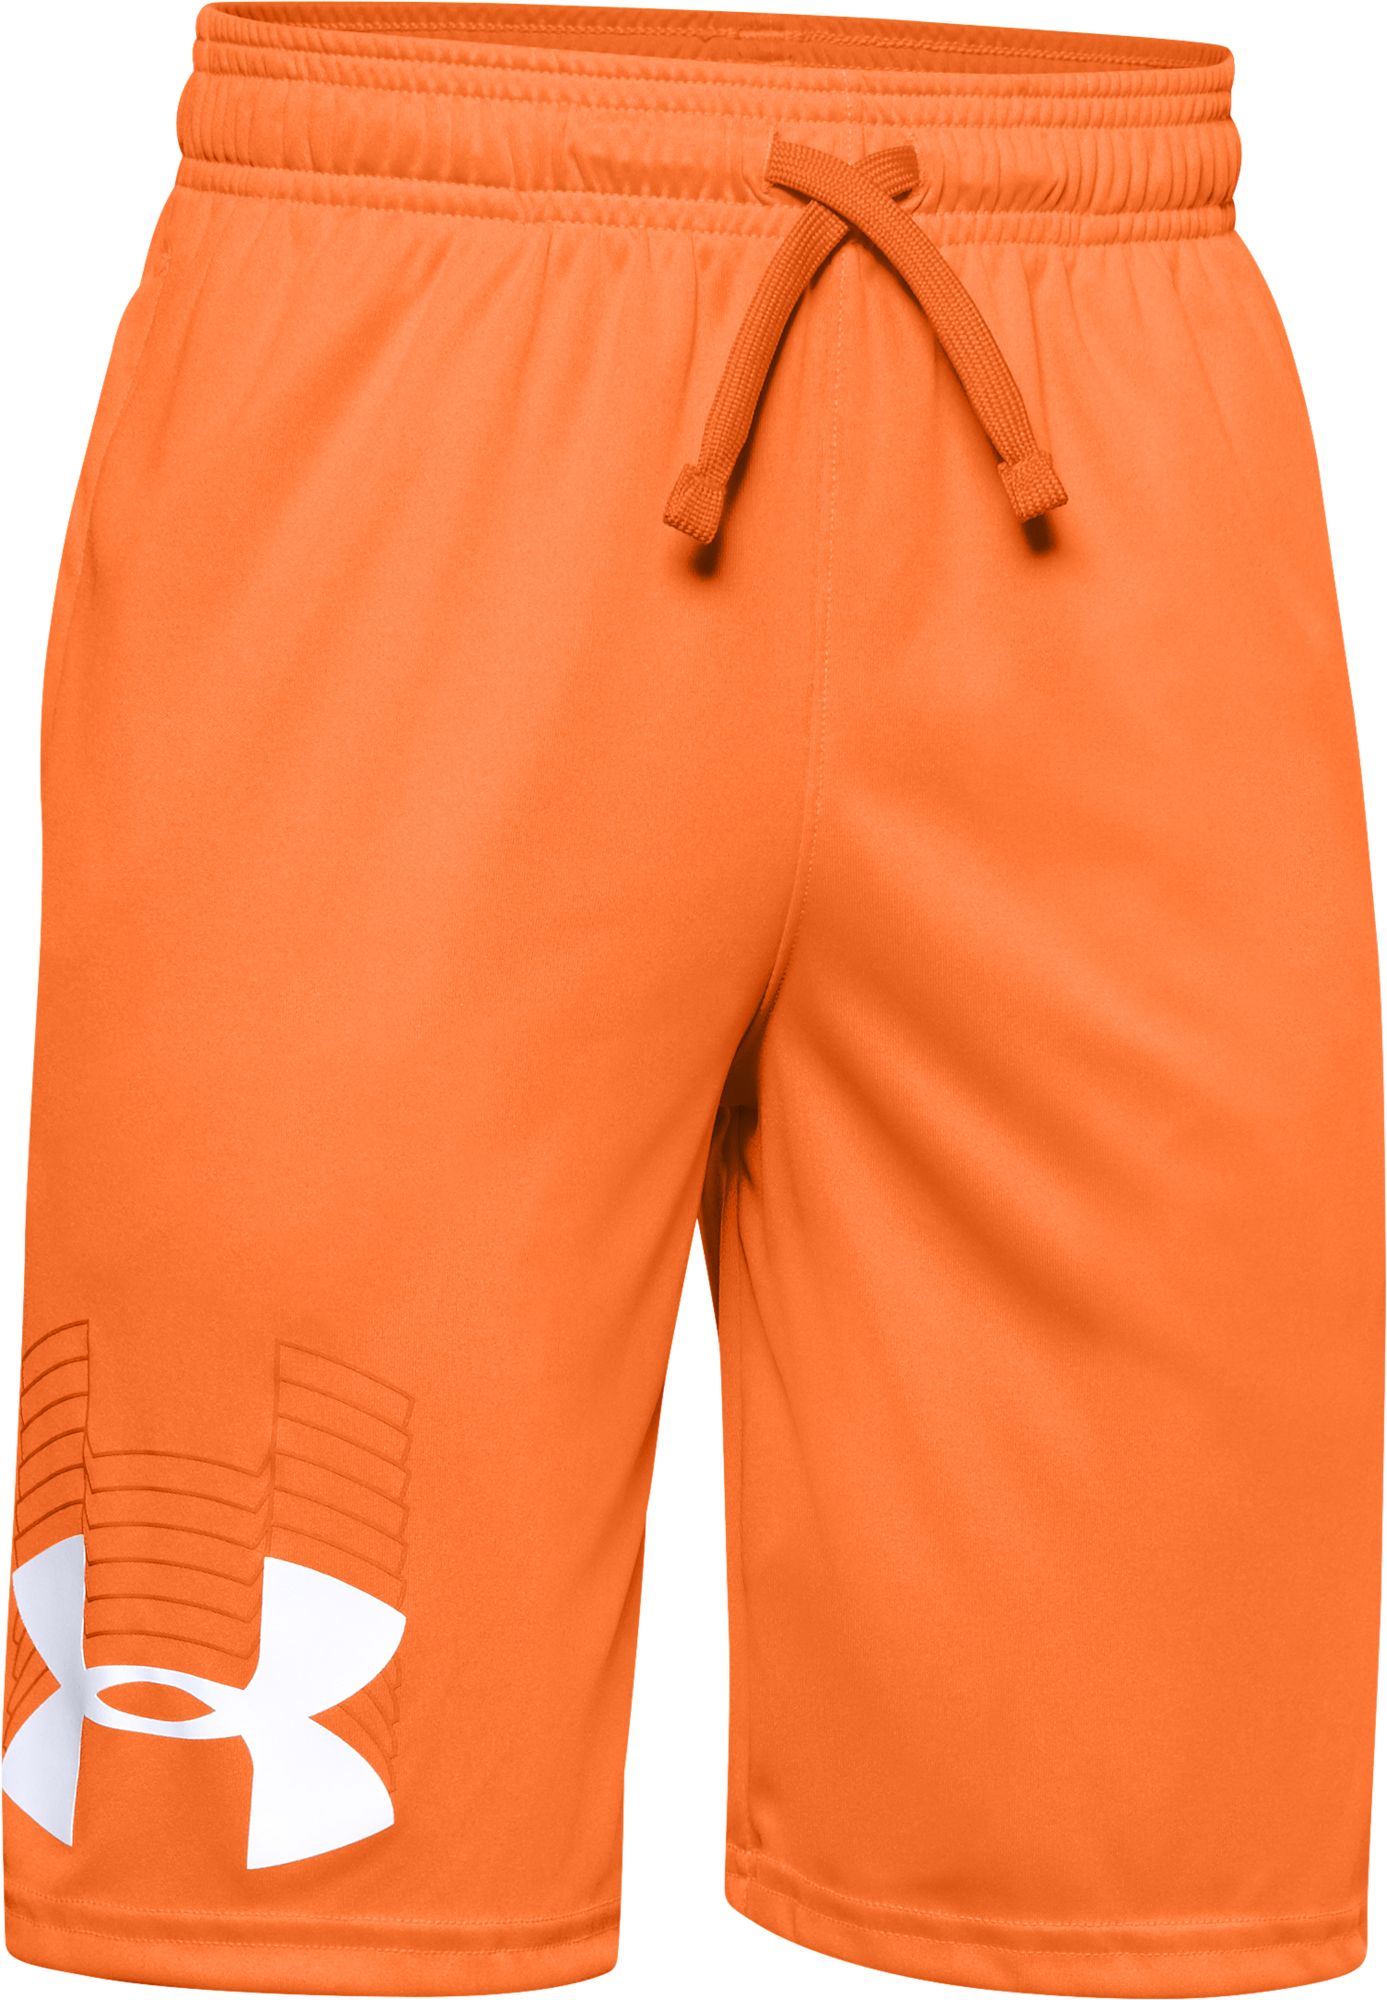 Orange Under Armour Shorts | Best Price 